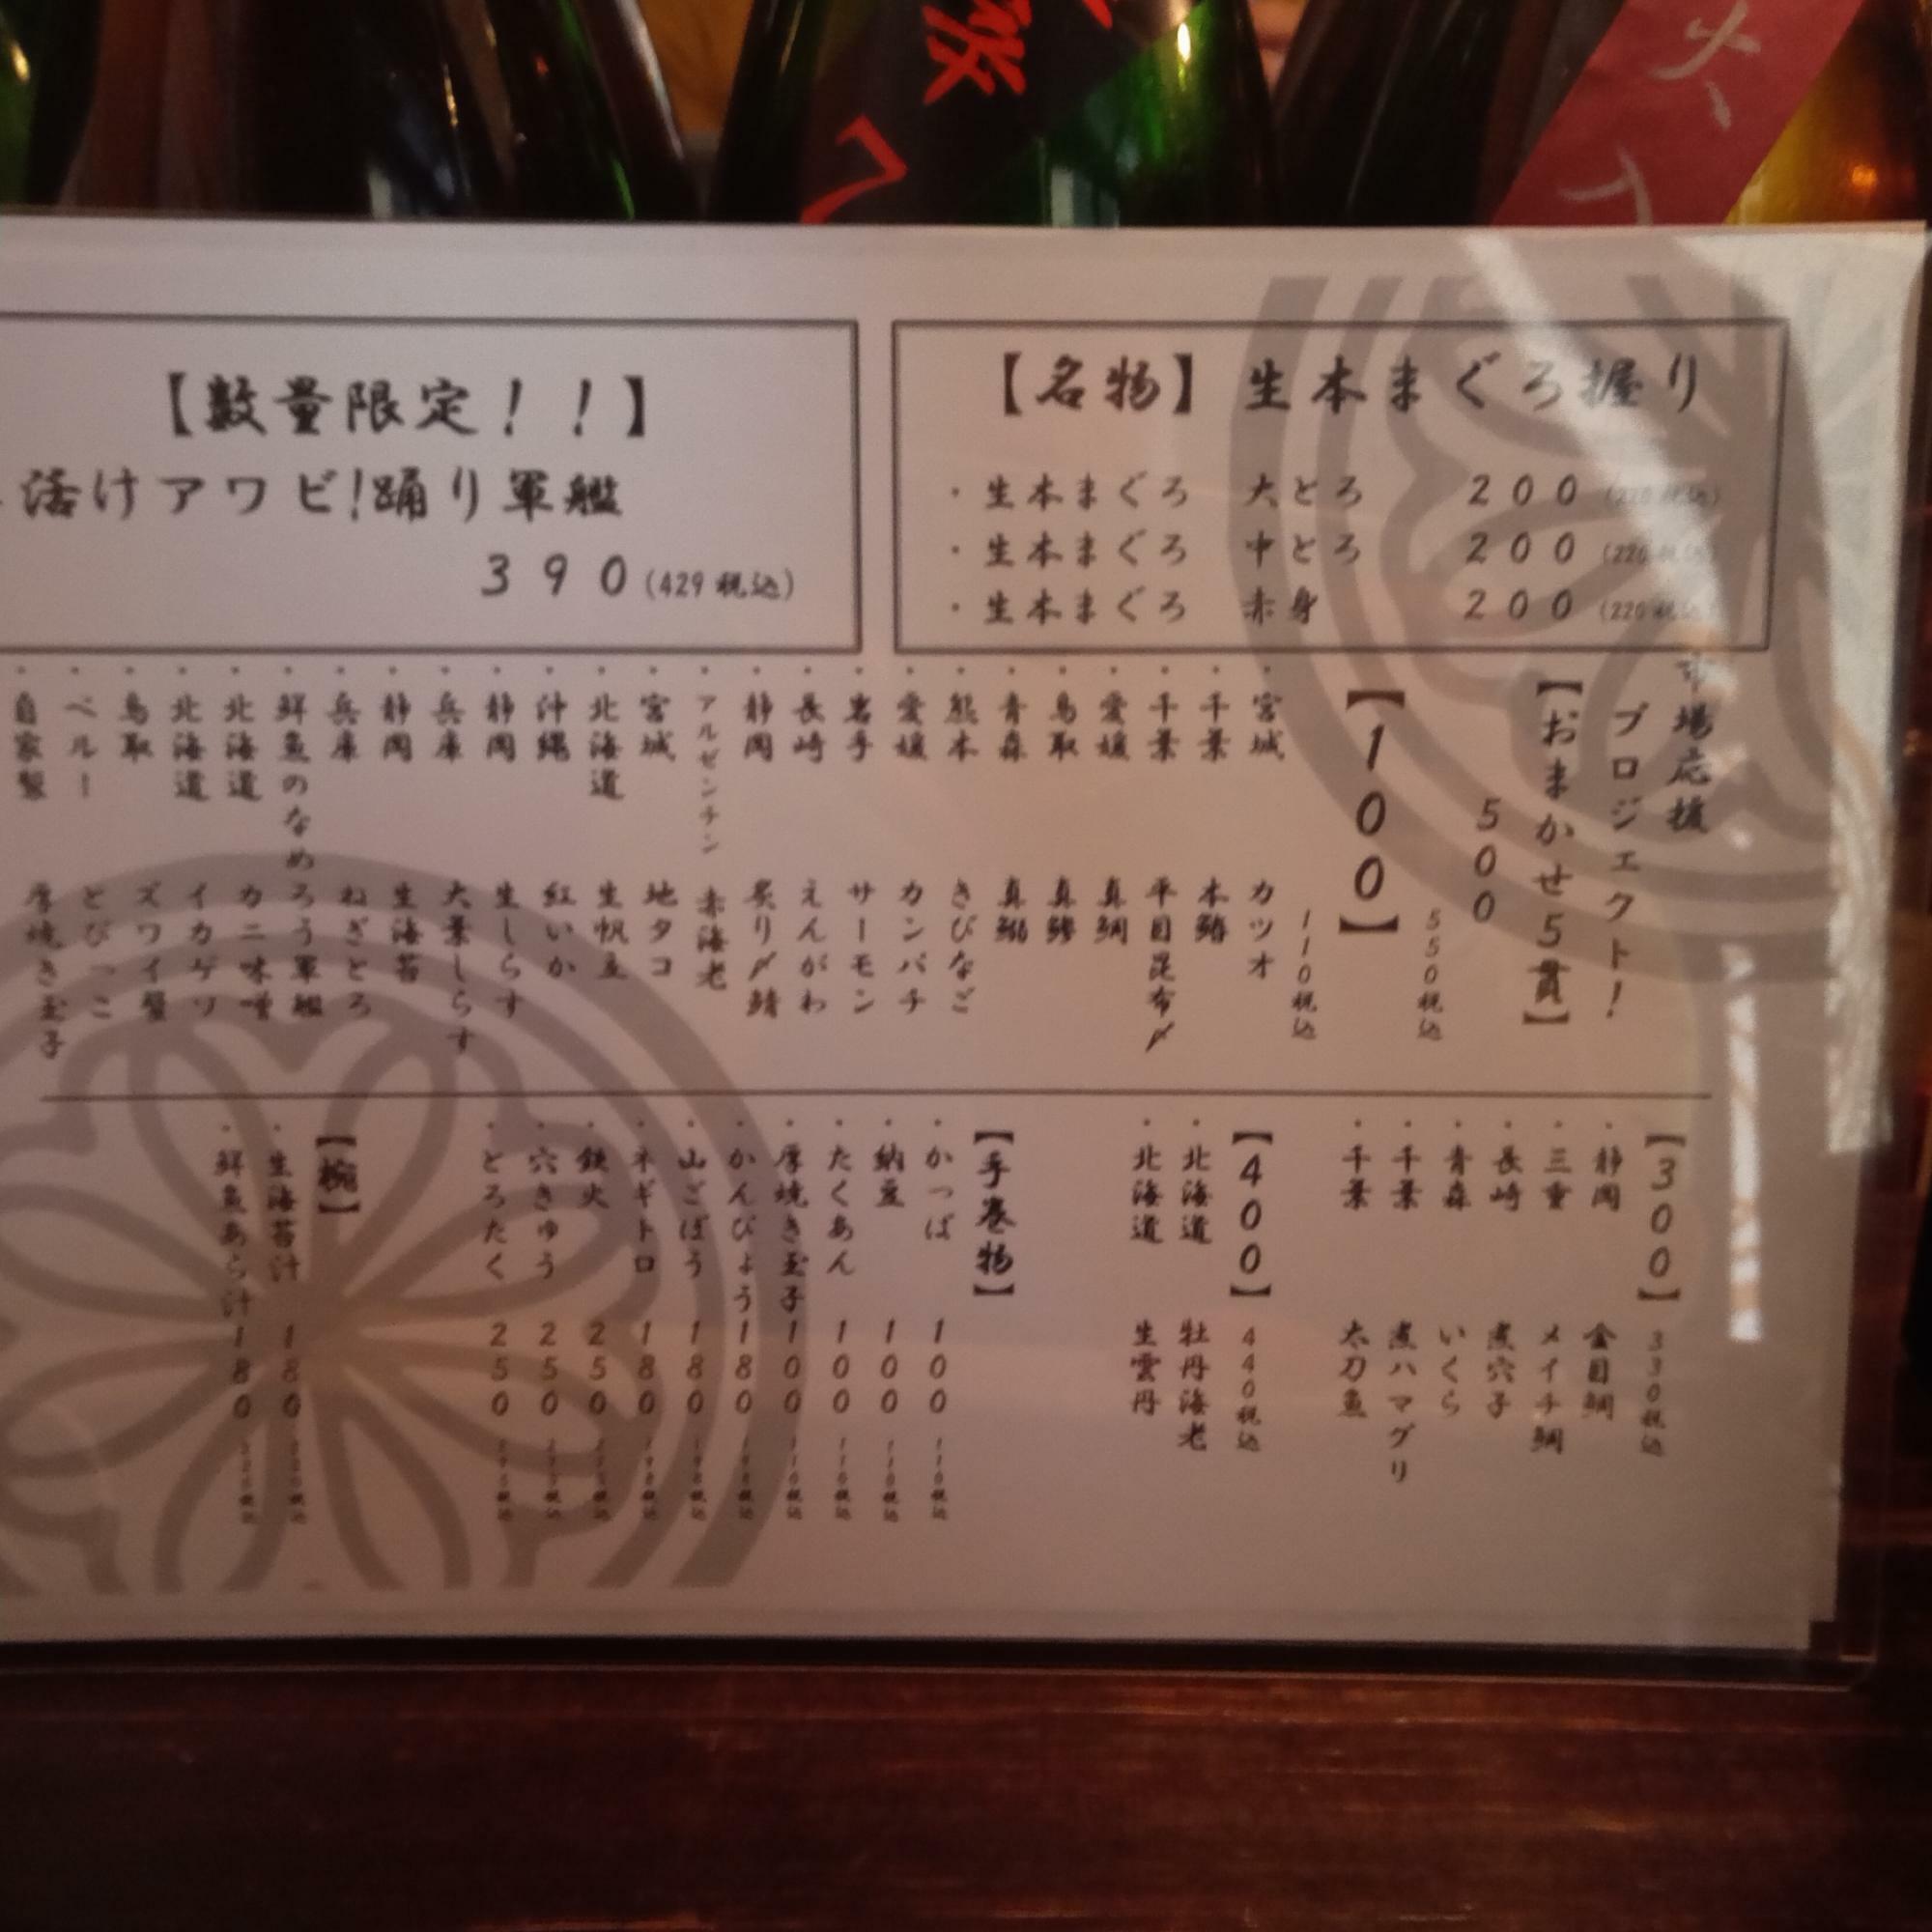 おまかせ５貫は「和食と立食い寿司 NATURA」の定番メニューだそうです。